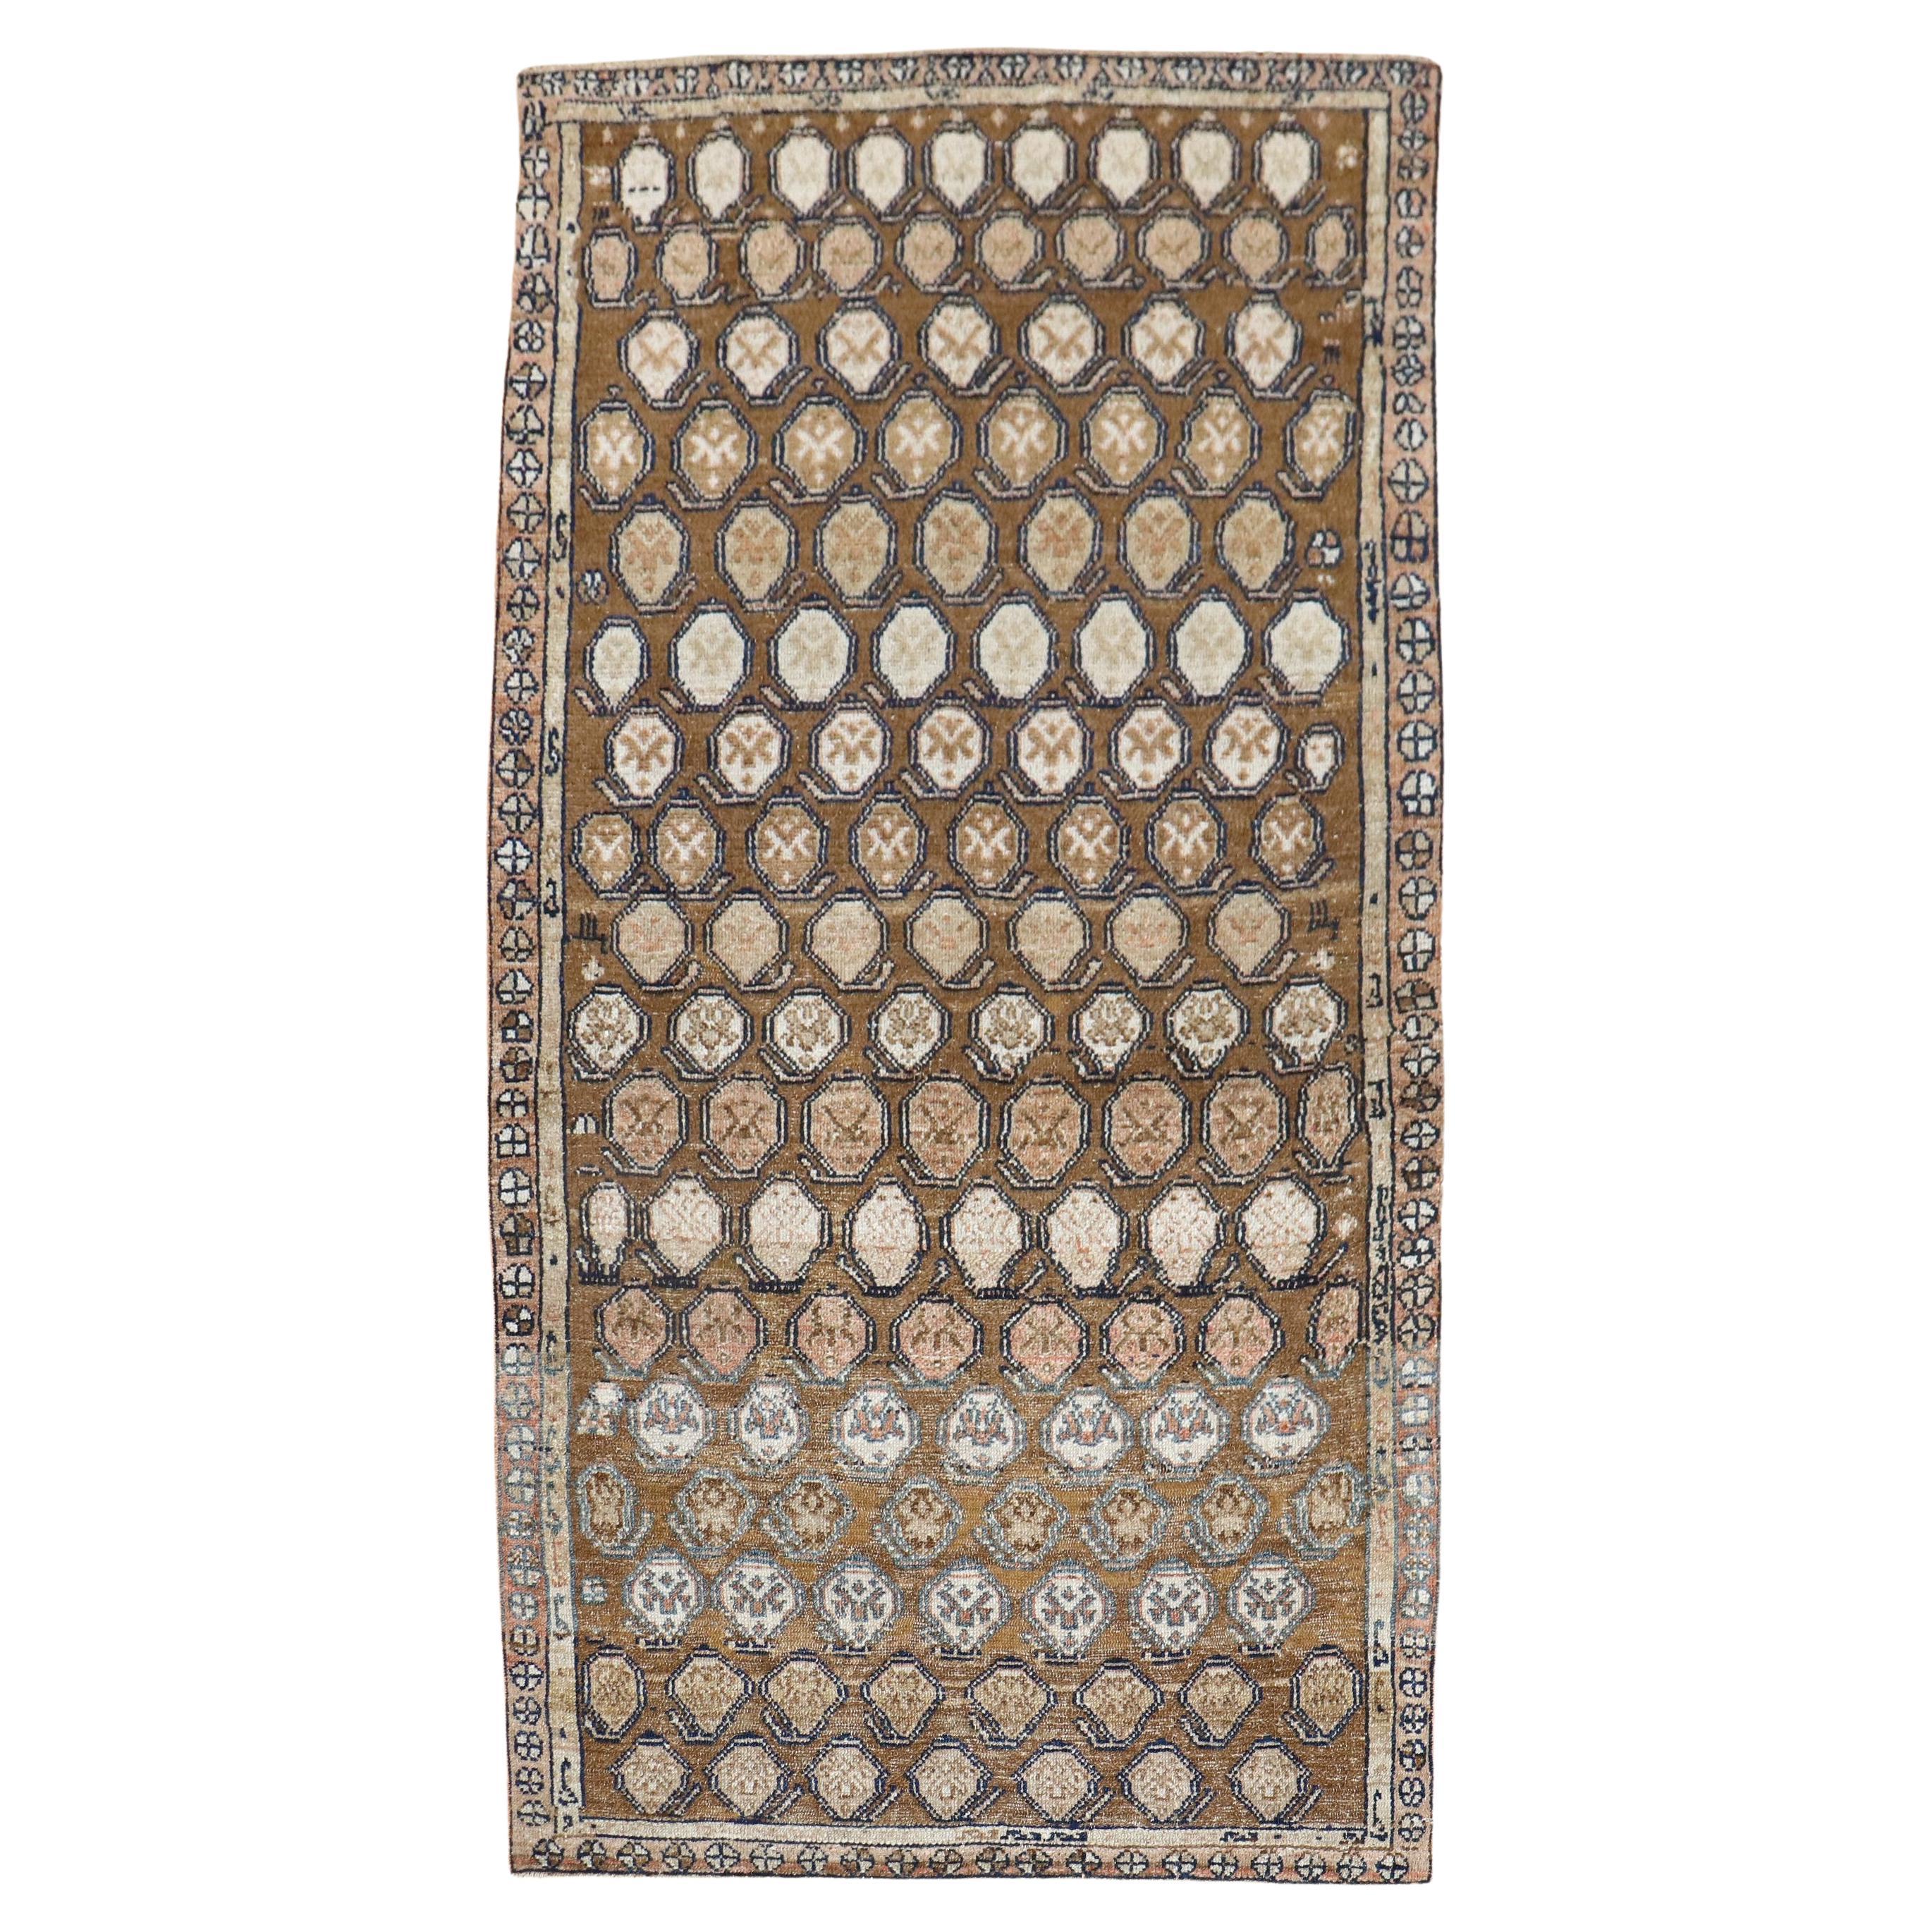 Antiker persischer brauner Schachtelteppich aus der Zabihi-Kollektion